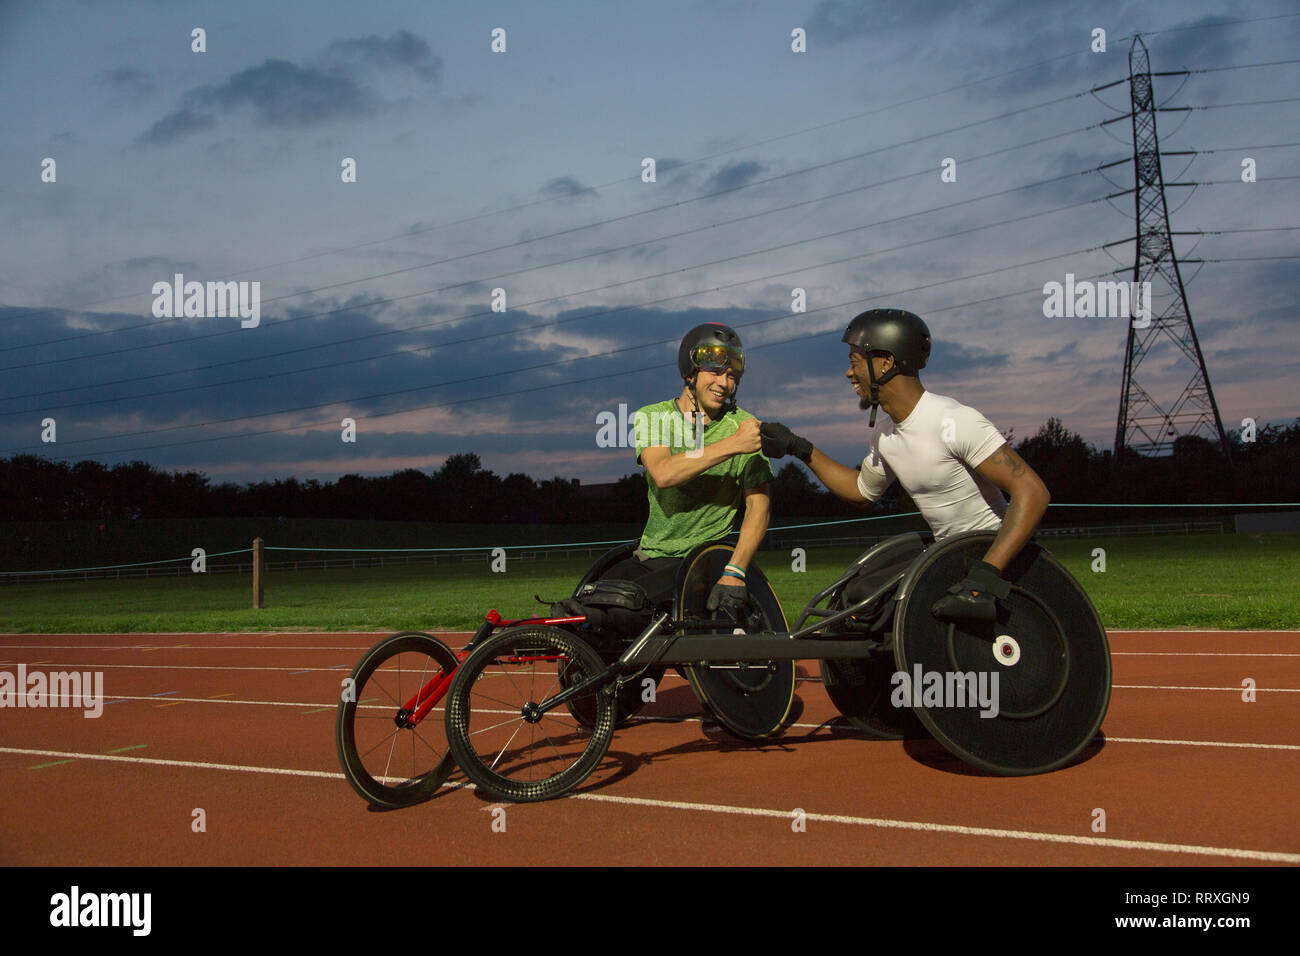 Querschnittsgelähmte Sportler Faust stoßen auf Sport, Training für Rollstuhl Rennen bei Nacht Stockfoto